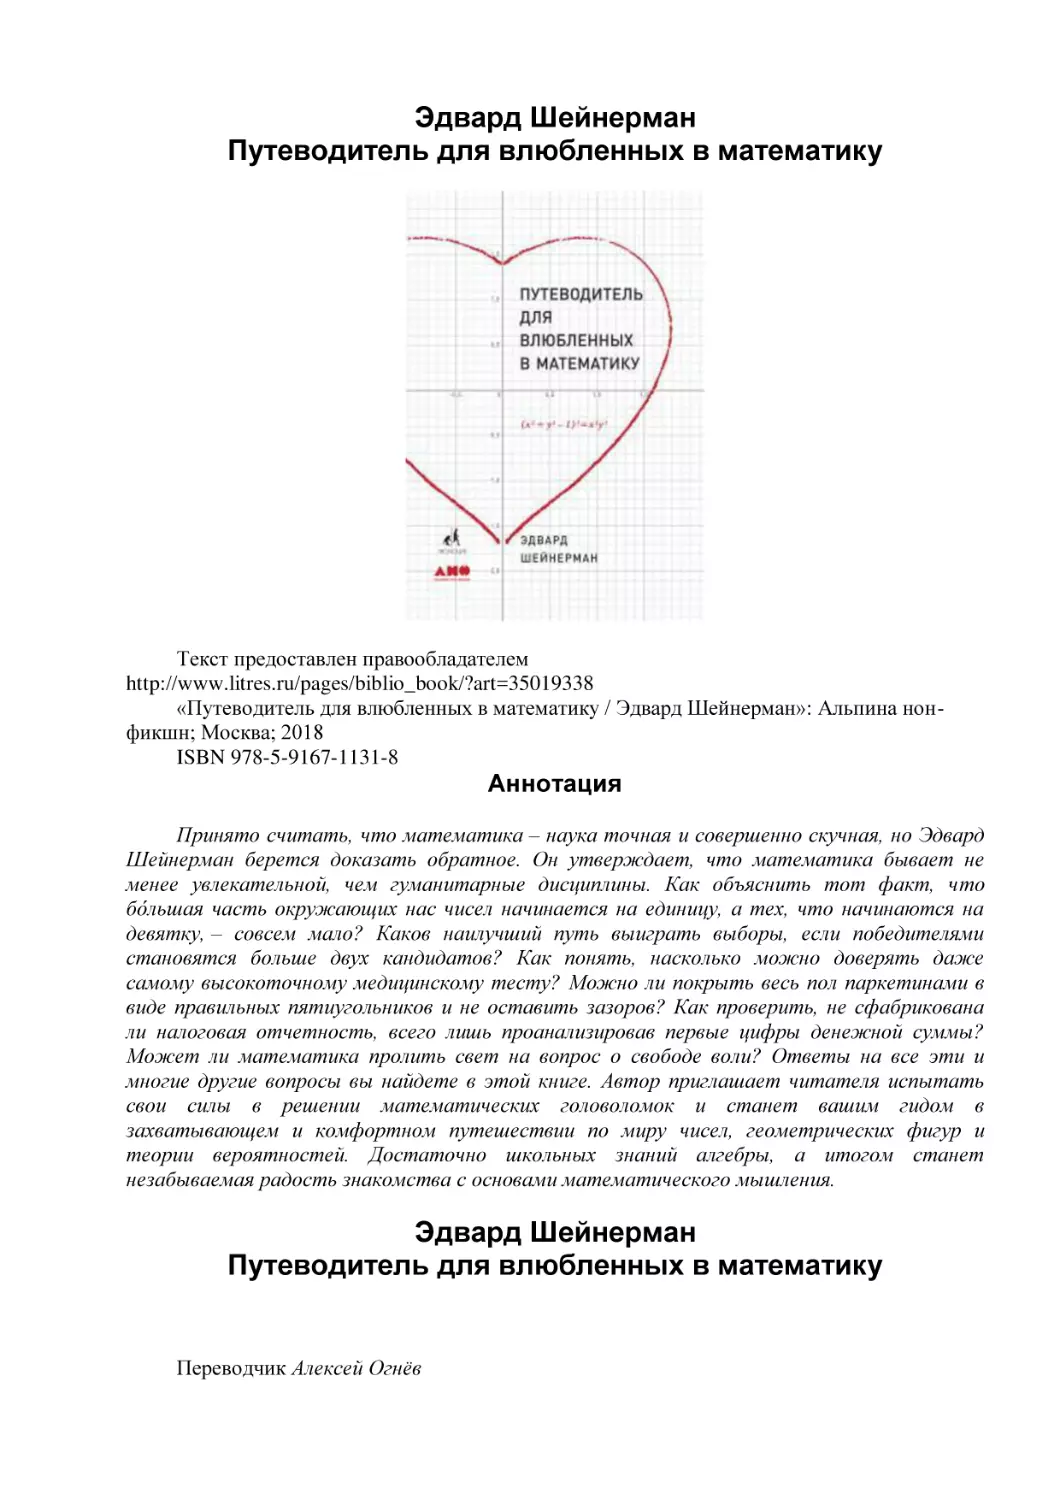 Эдвард Шейнерман
Путеводитель для влюбленных в математику
Аннотация
Эдвард Шейнерман (1)
Путеводитель для влюбленных в математику (1)